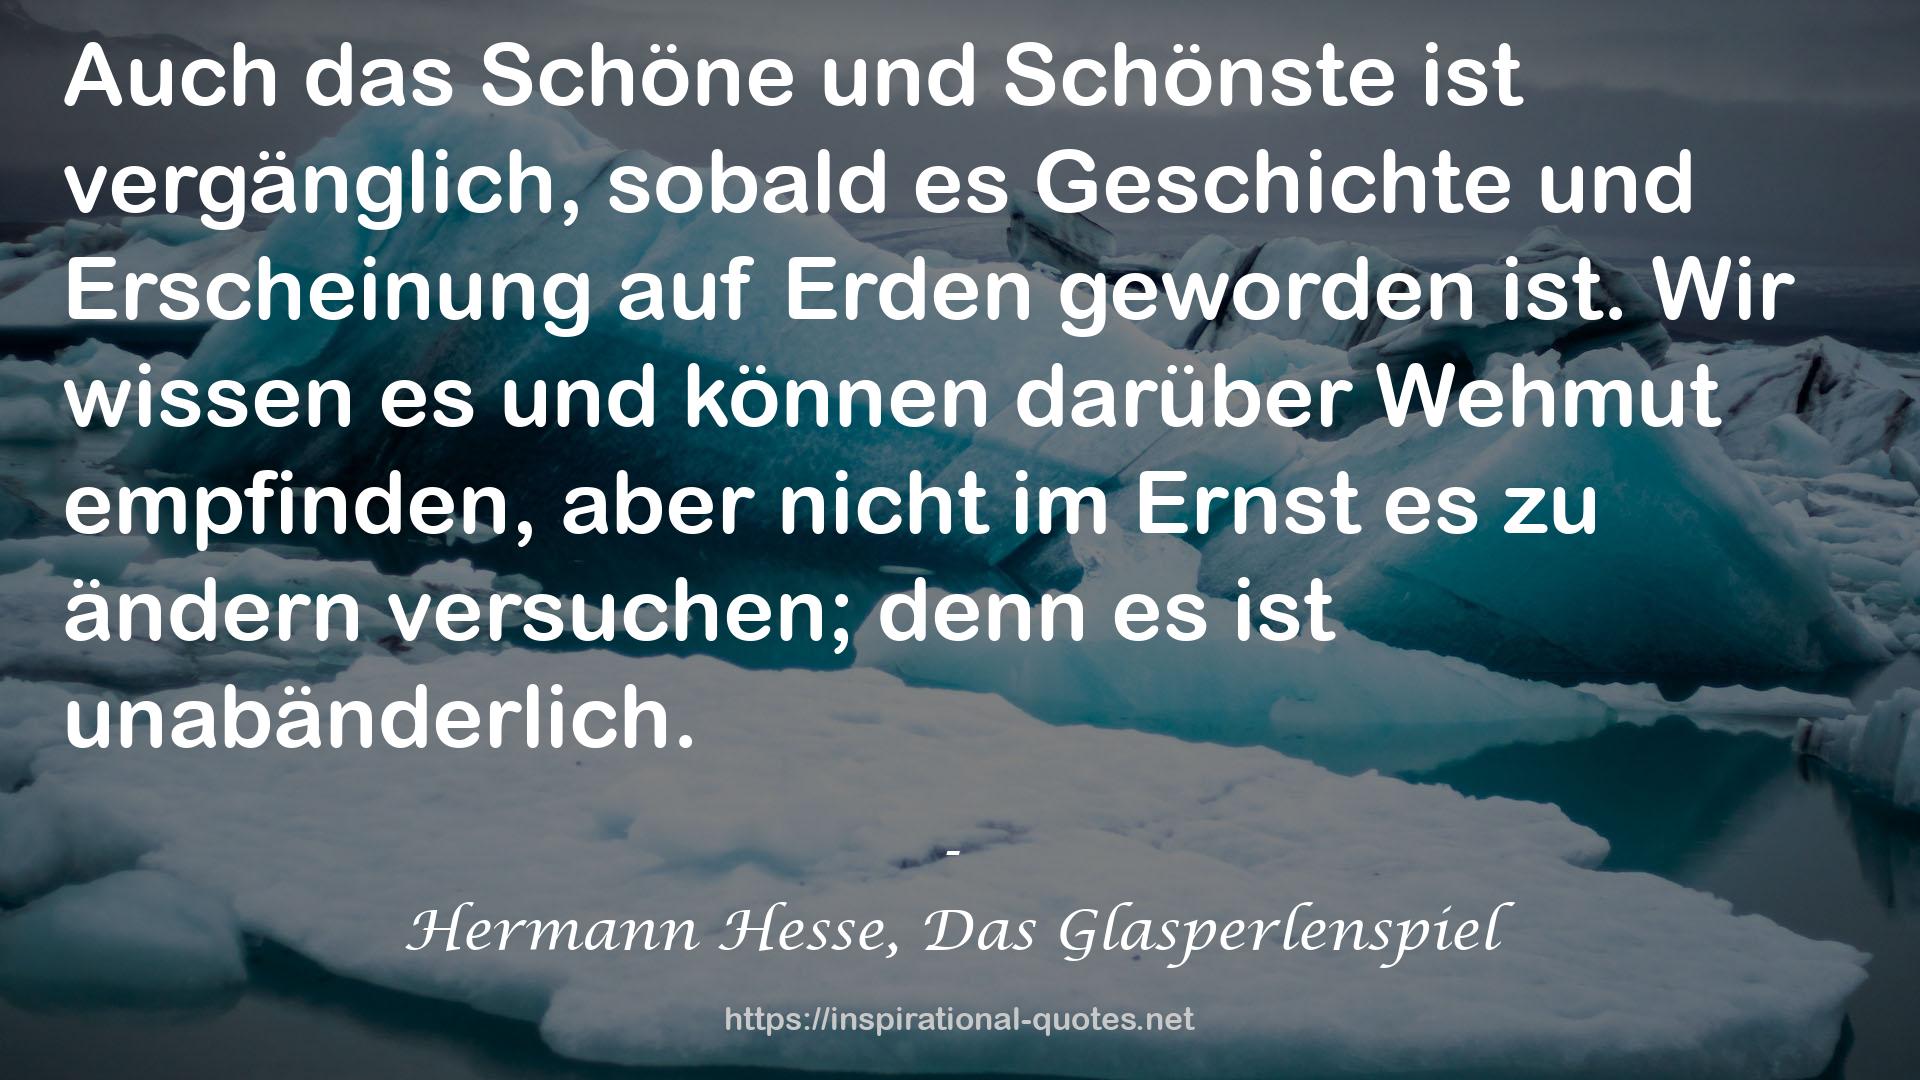 Hermann Hesse, Das Glasperlenspiel QUOTES